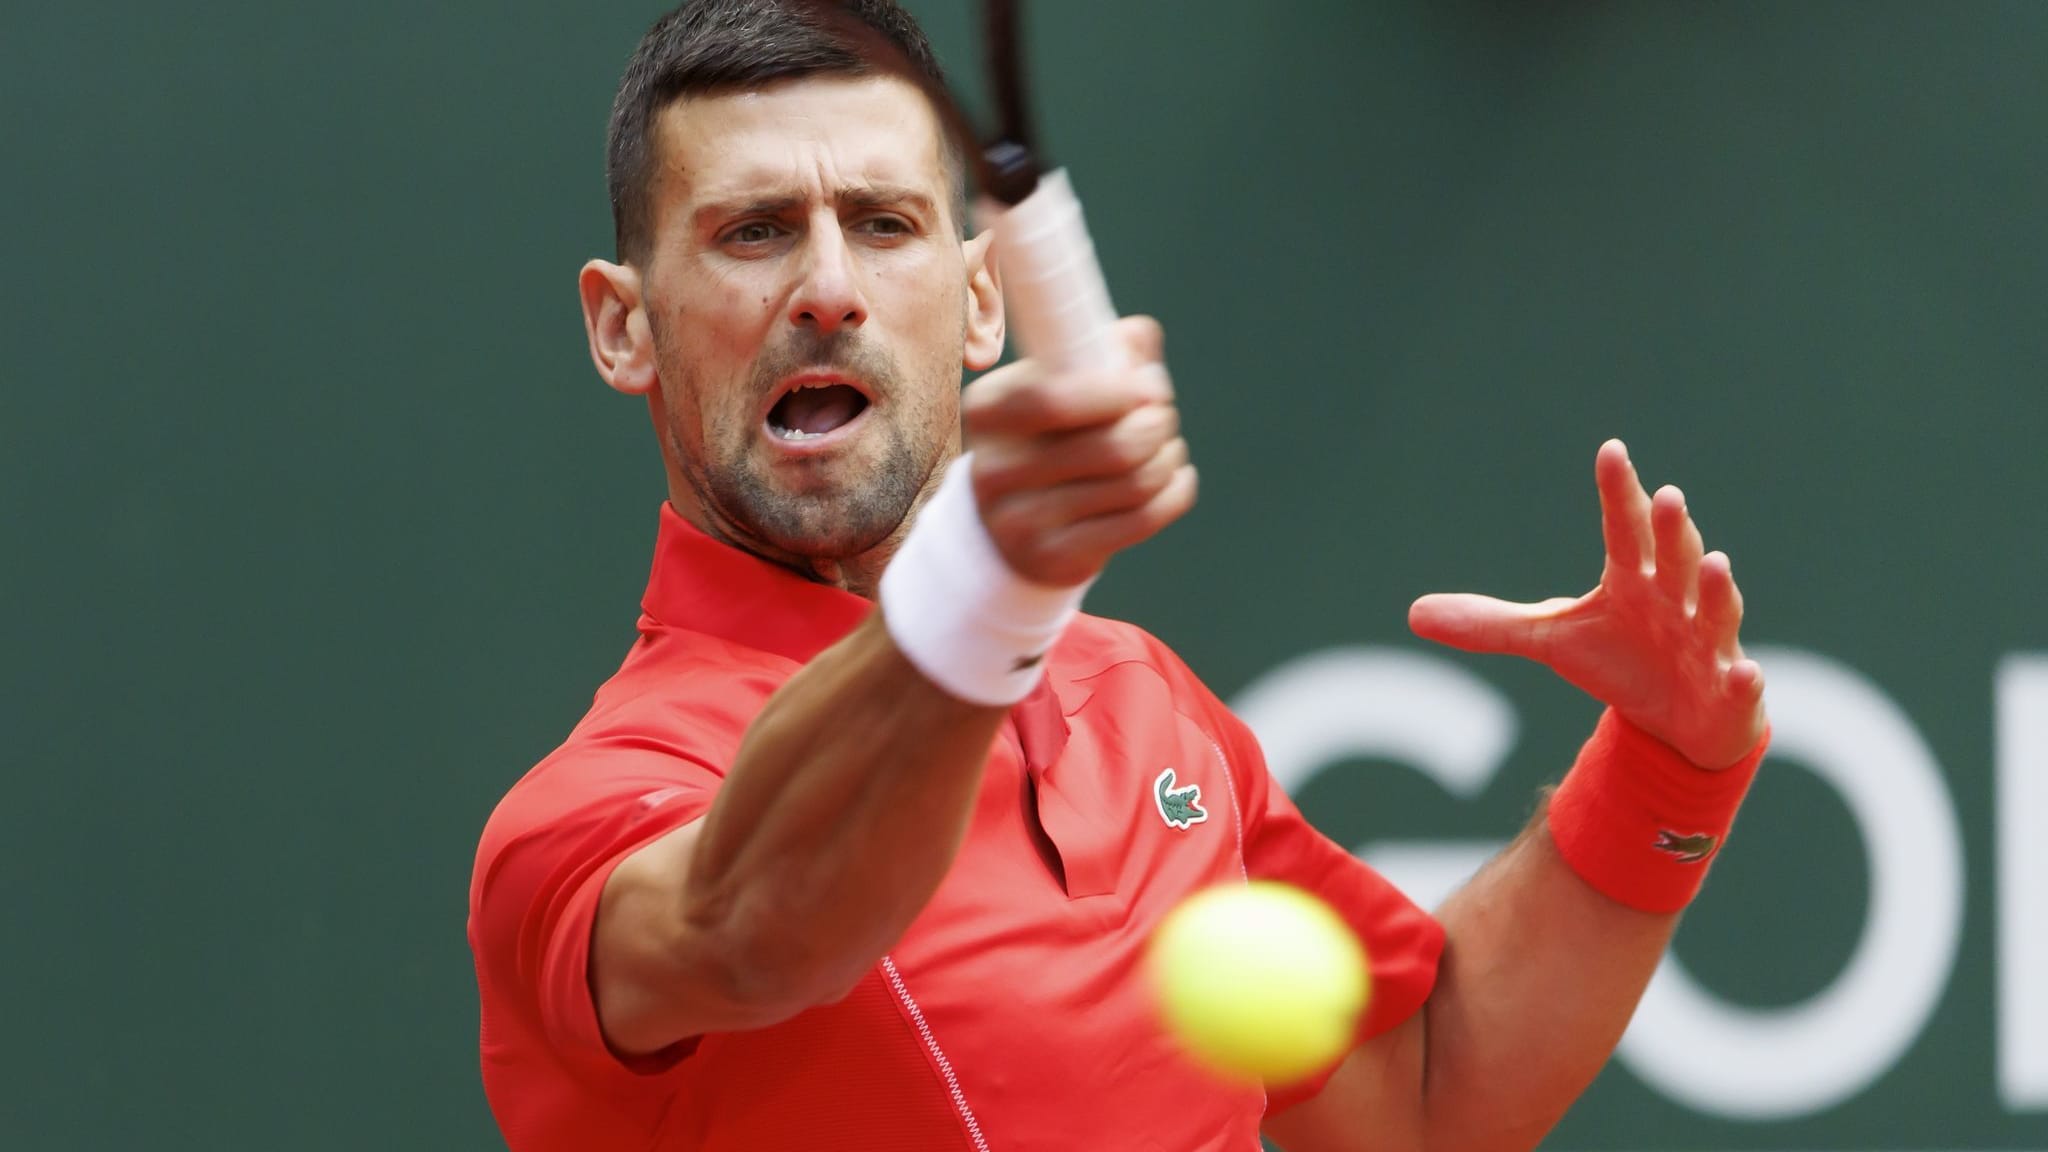 Zum Geburtstag: Djokovic in Genf im Viertelfinale